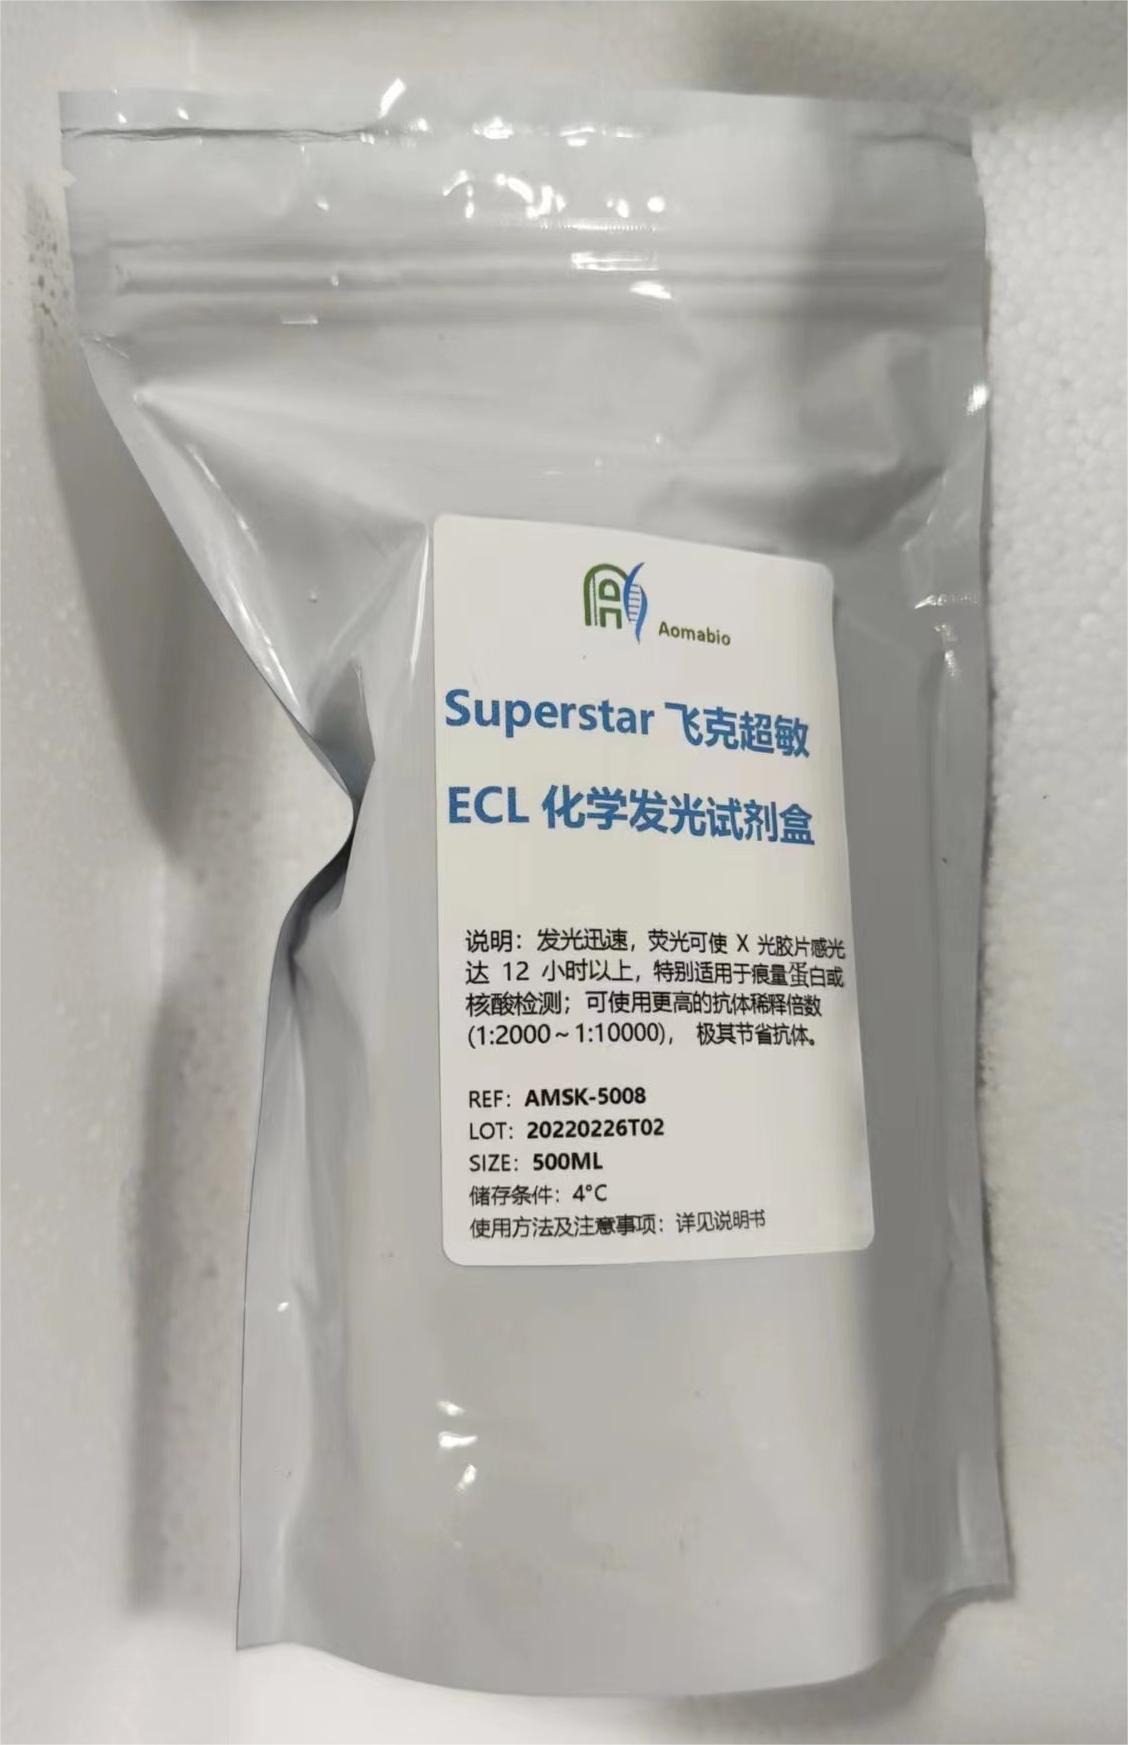 Superstar飞克超敏ECL化学发光试剂盒  AMISK5008—500ml